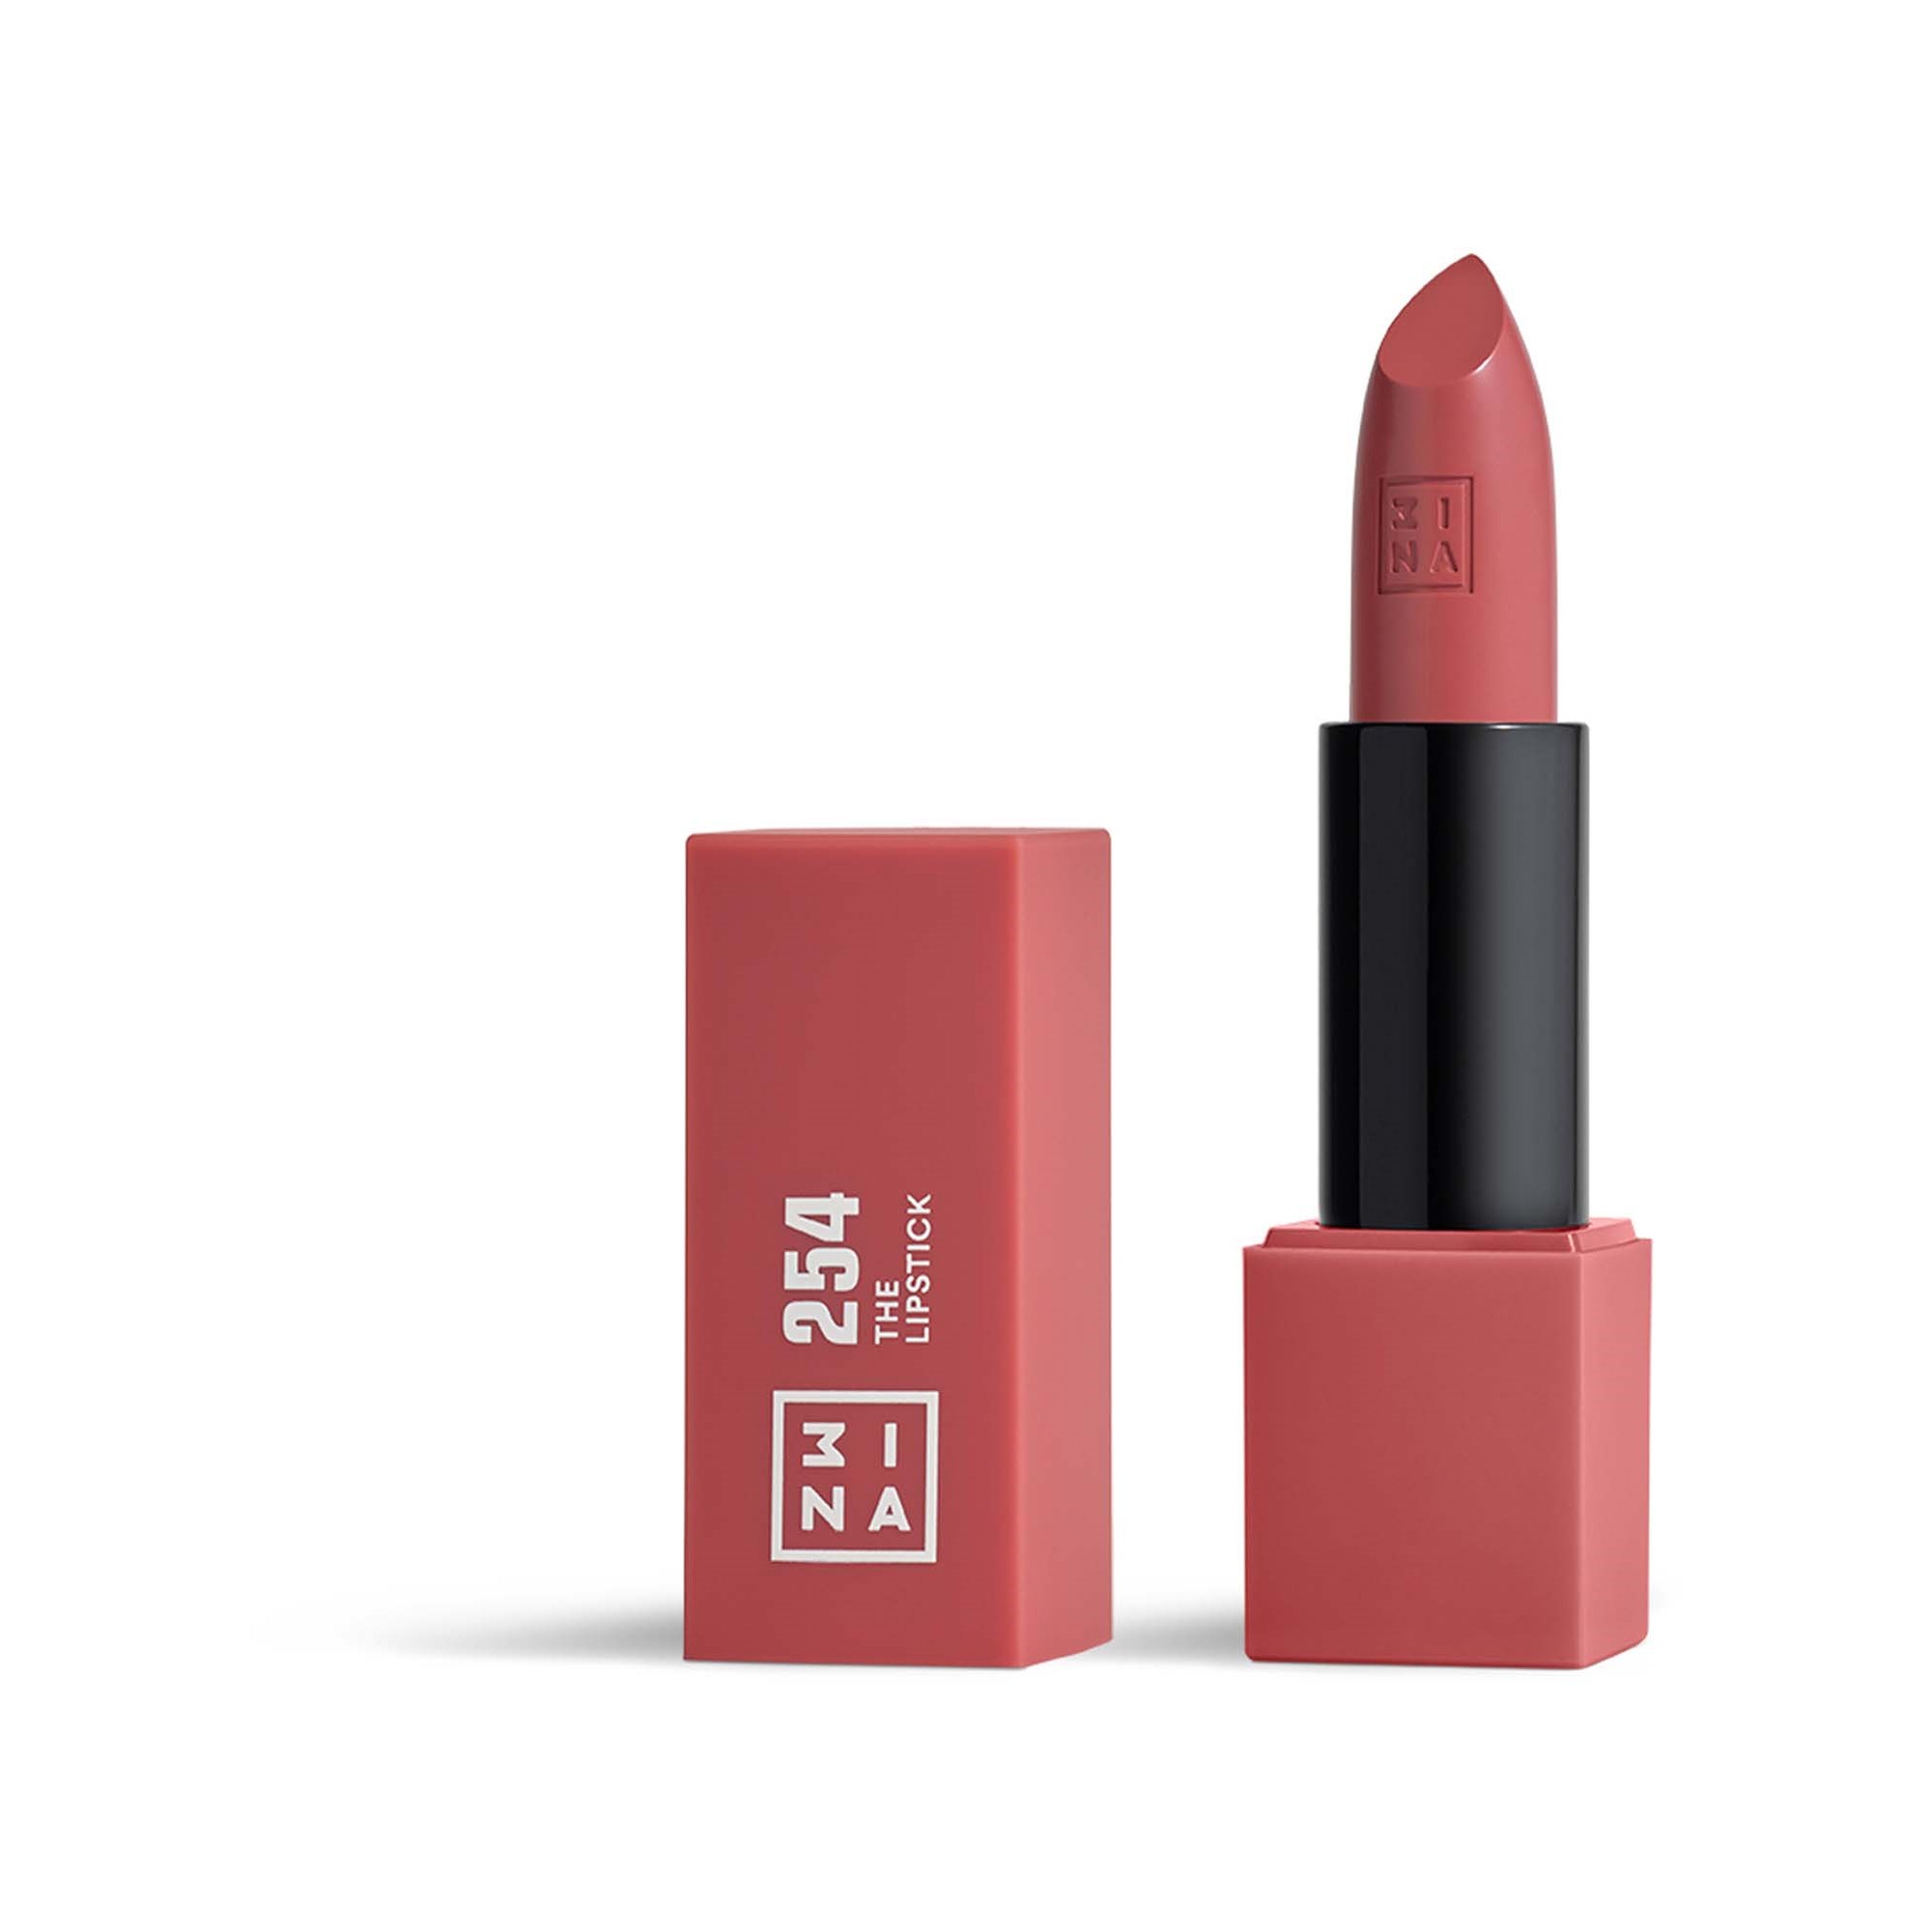 3INA The Lipstick 254